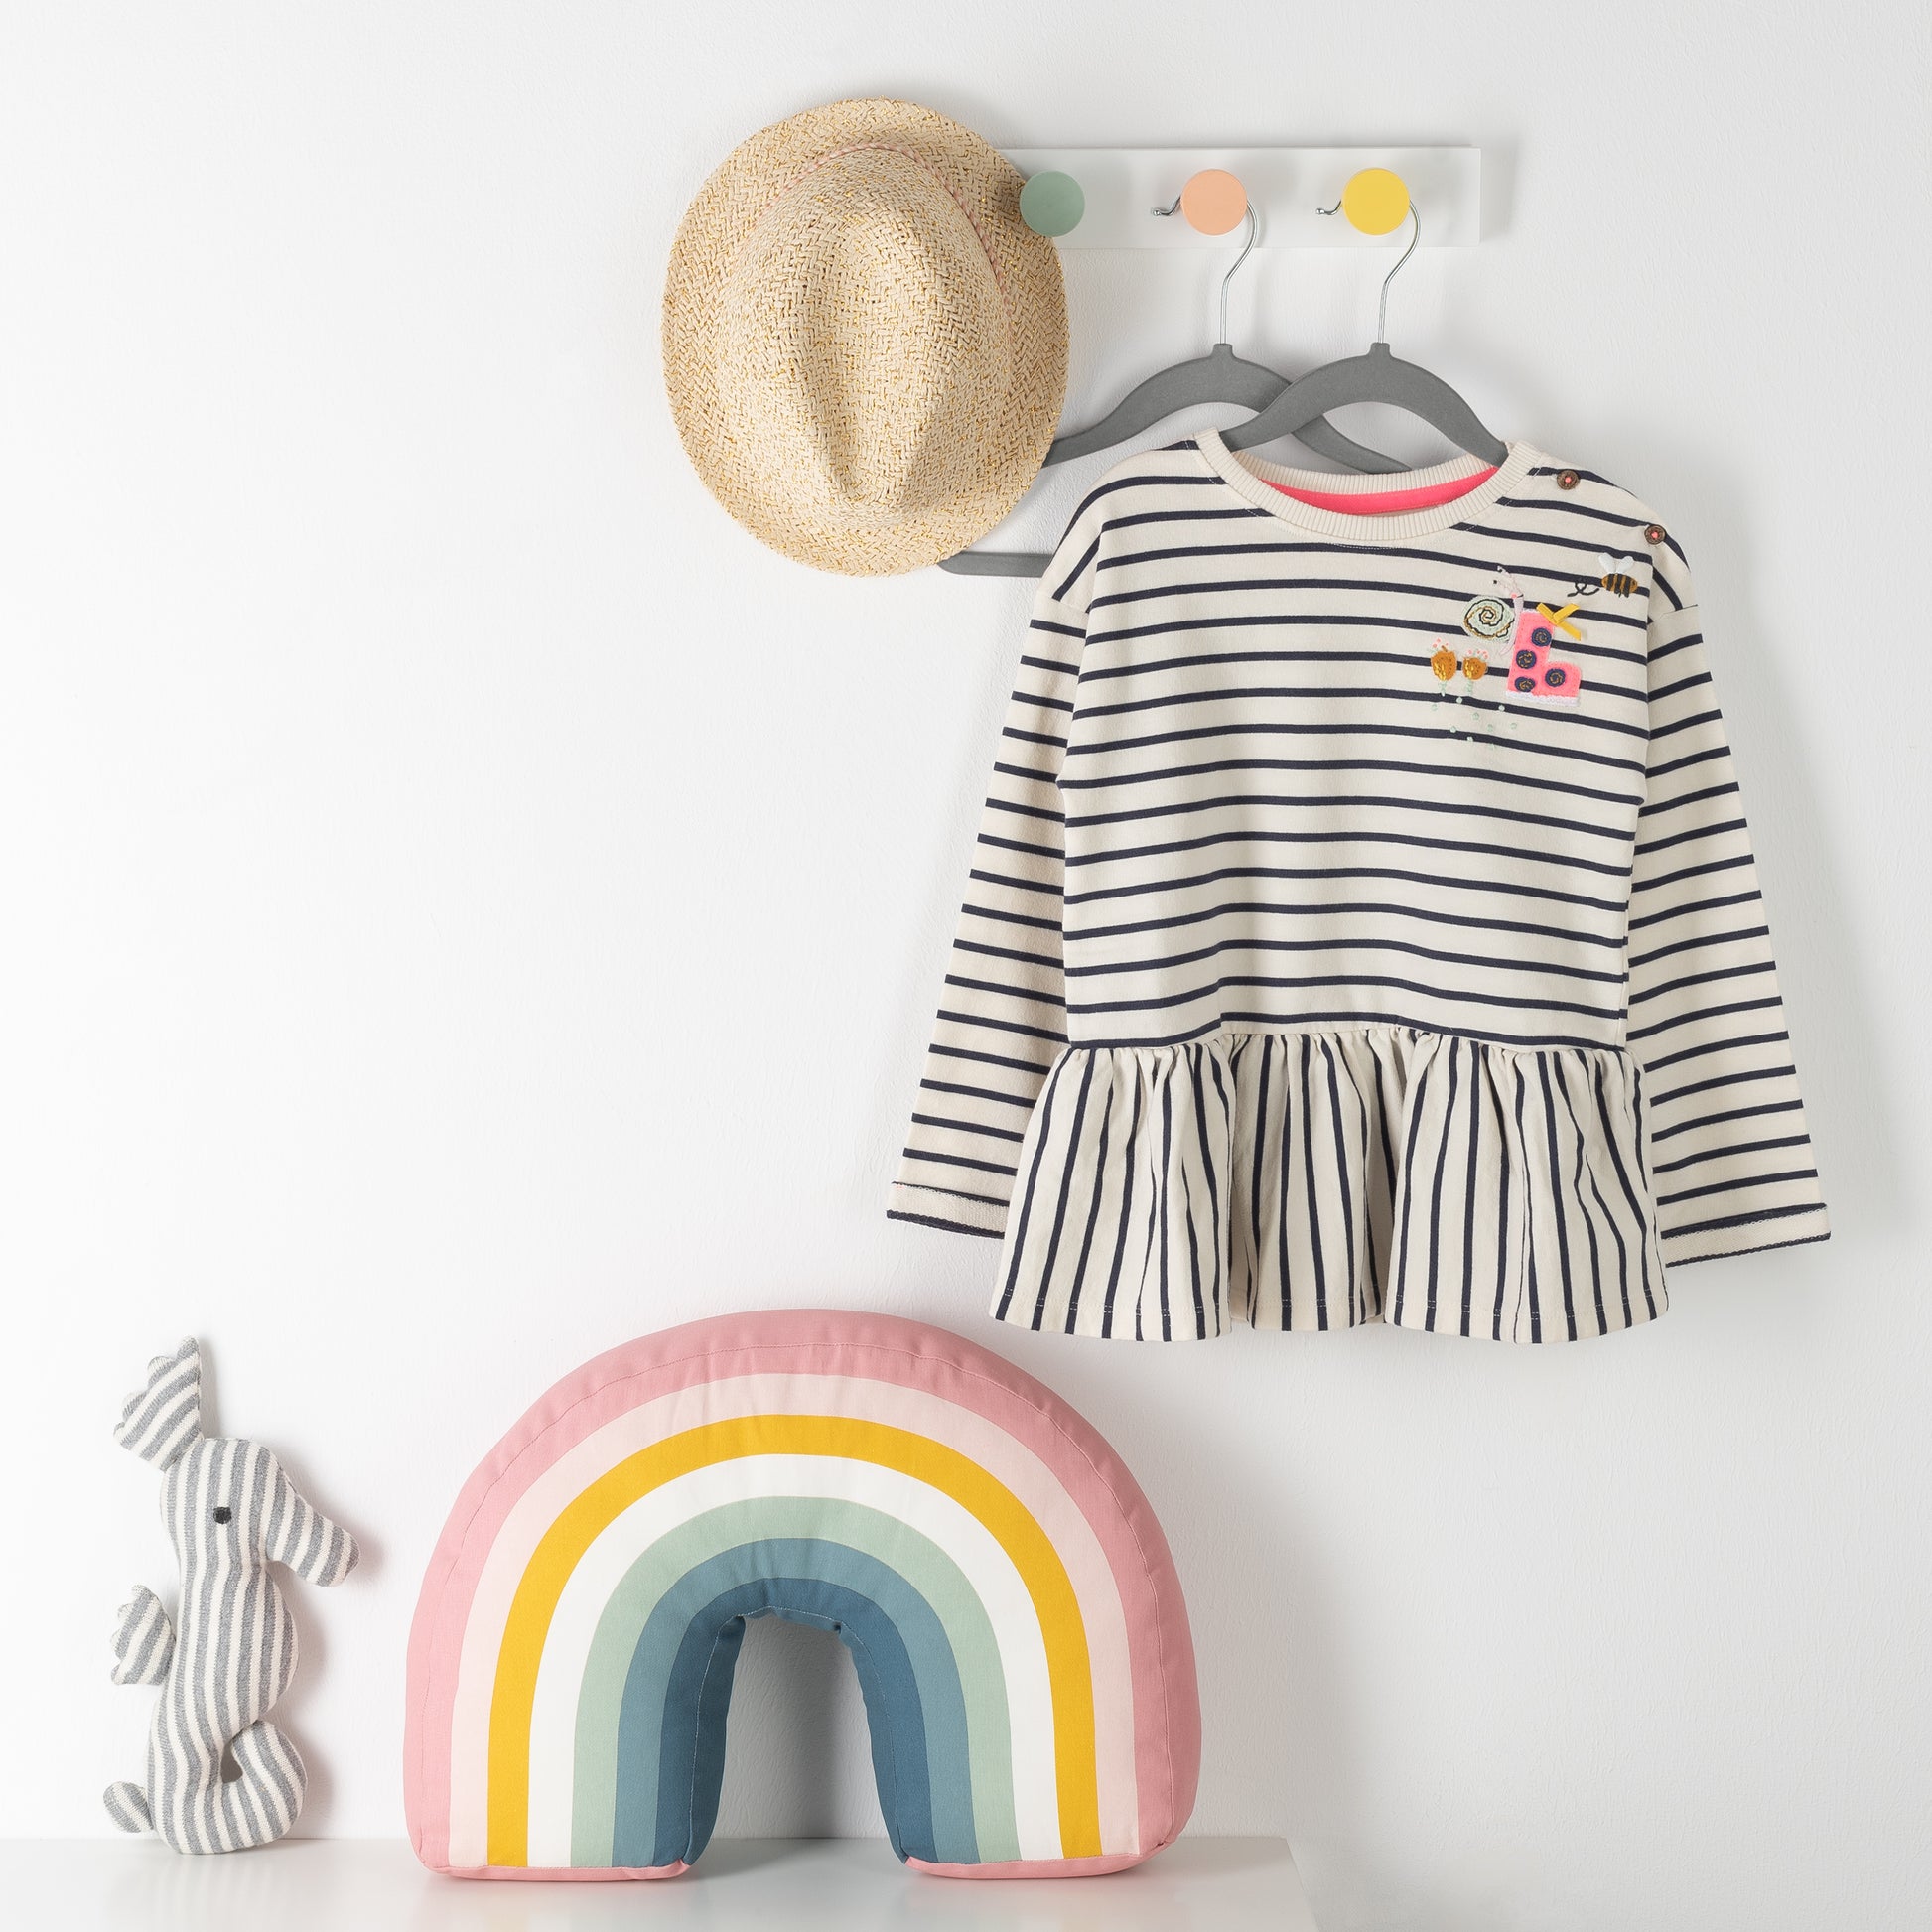 Wandhaken mit Strohhut und gestreiftem Kinderkleid auf grauen Kinderkleiderbügel neben gestreiftem Kissen in Regenbogenfarben